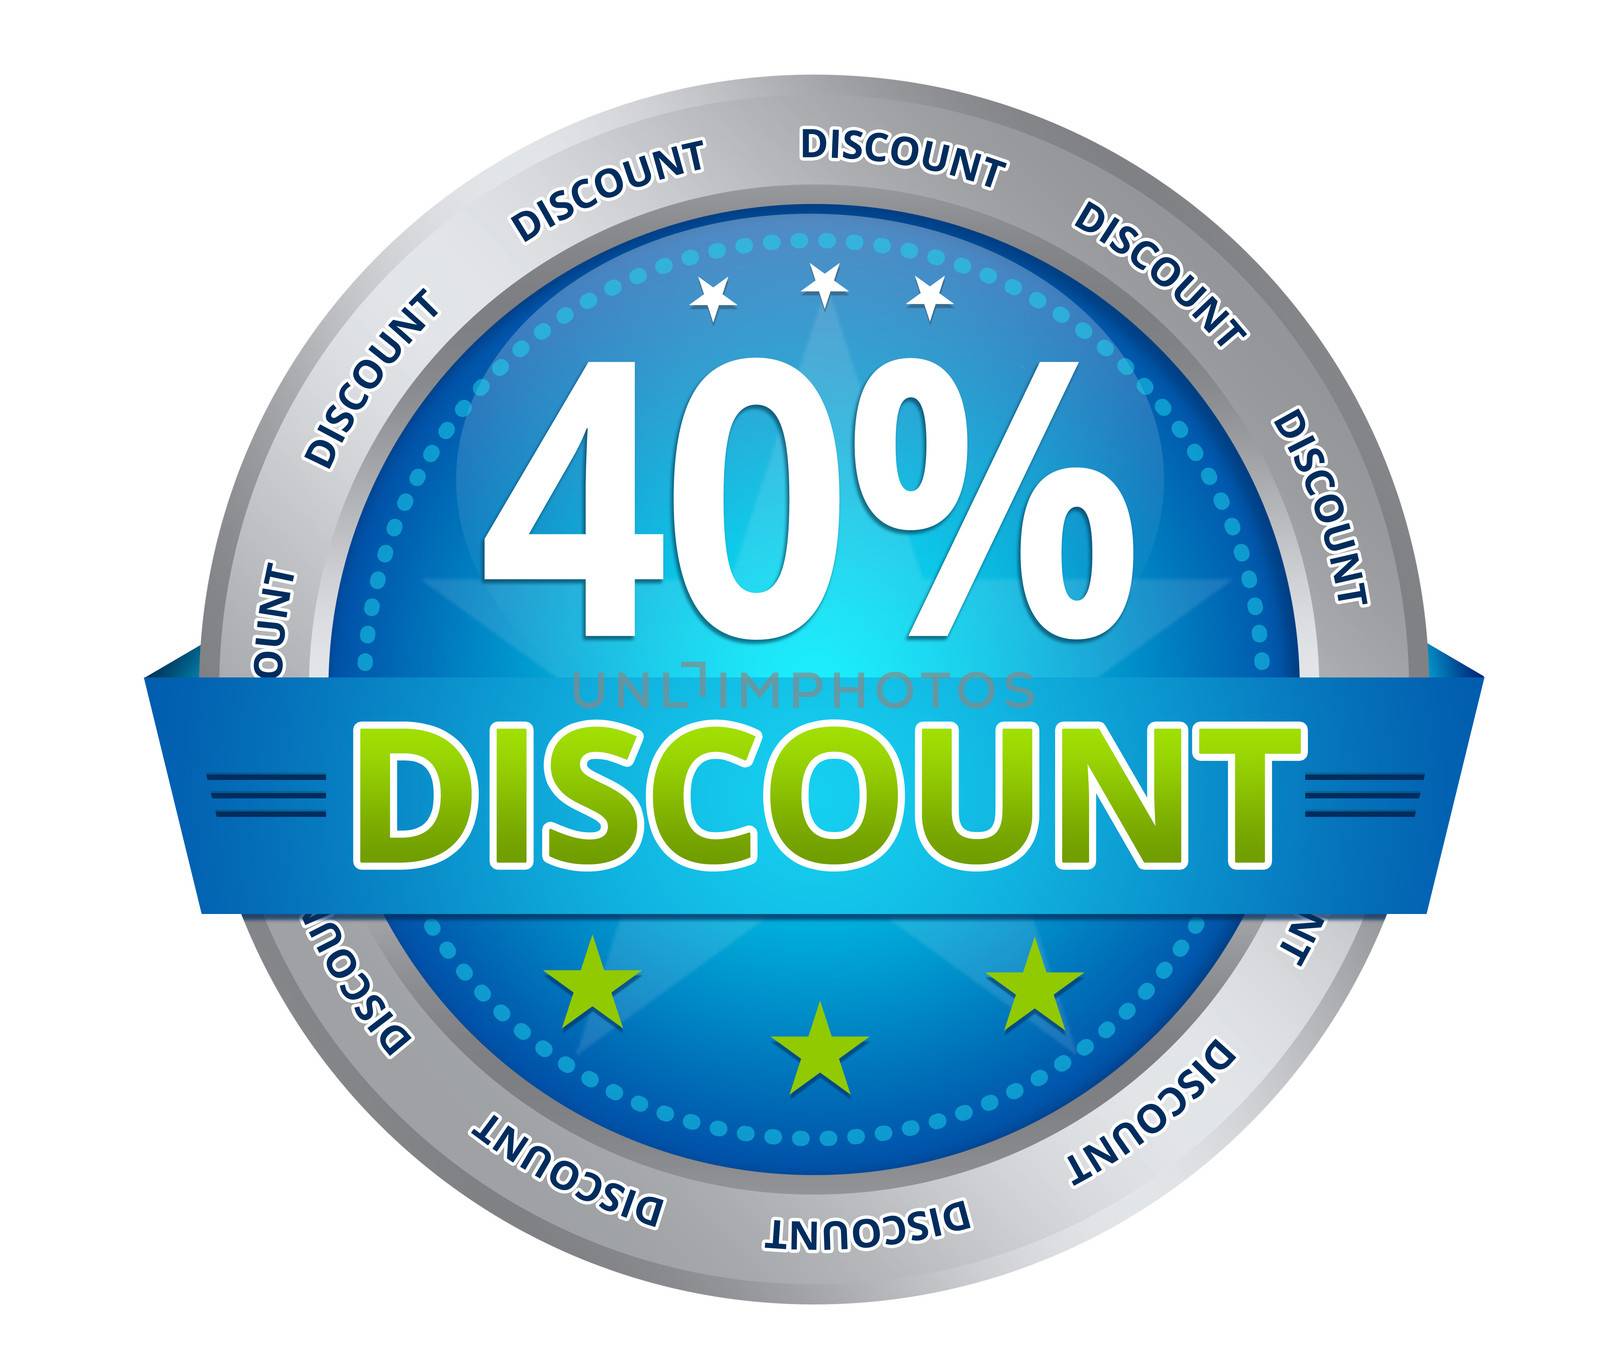 40 percent discount by kbuntu